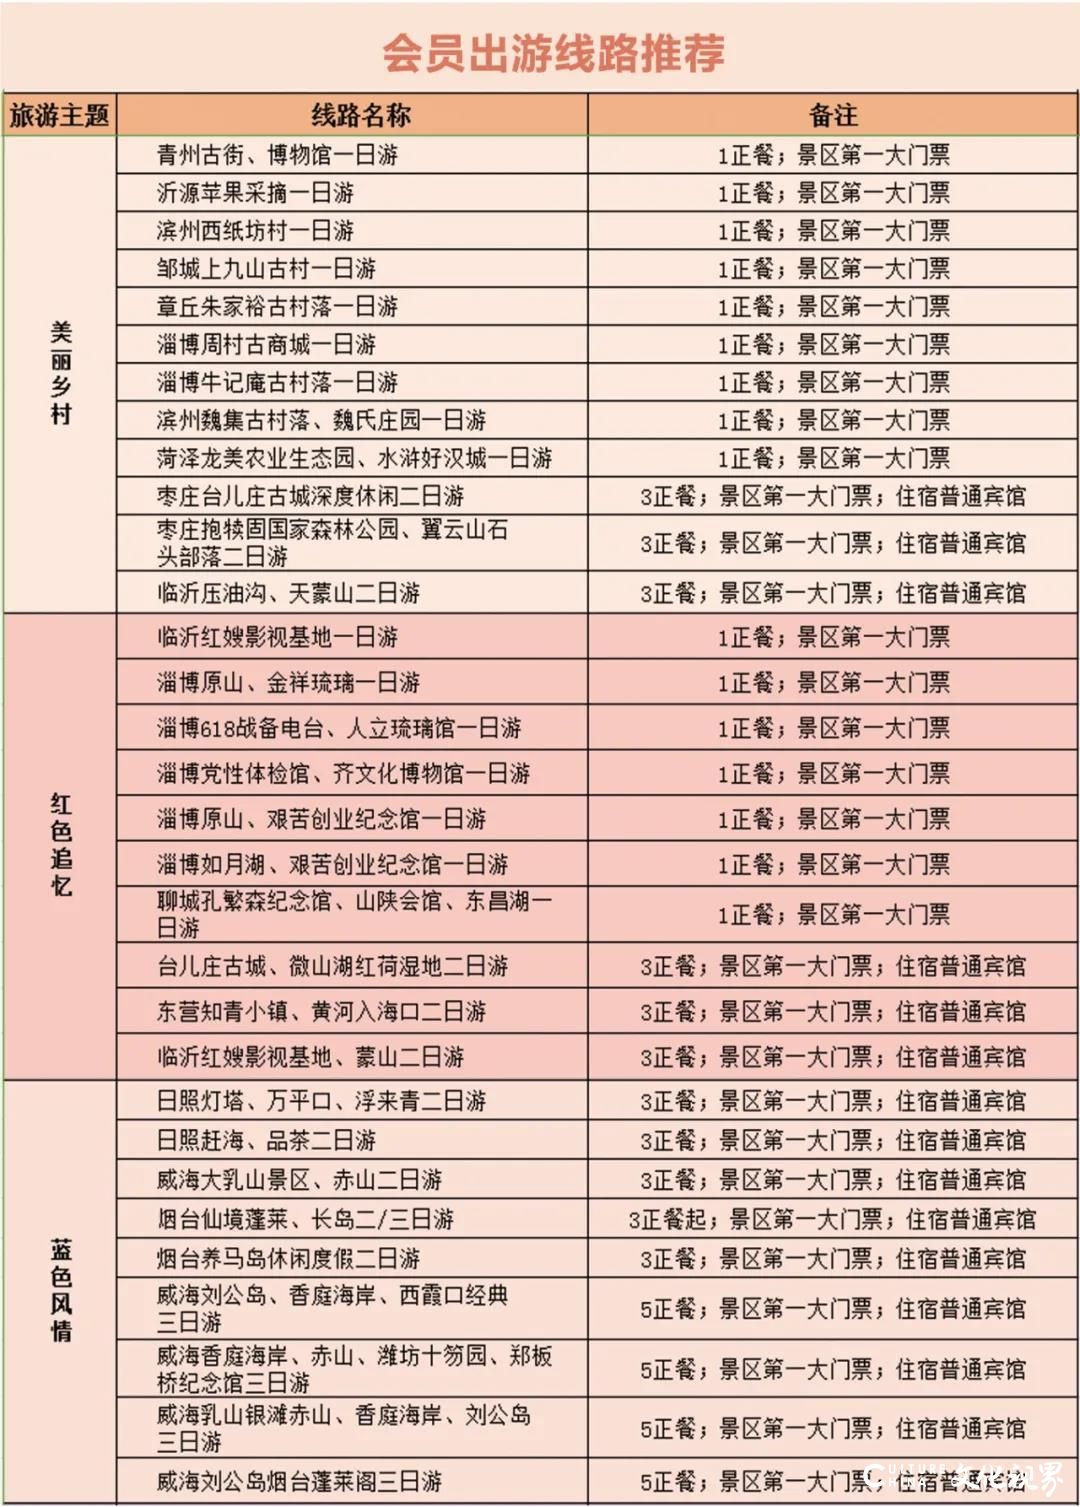 嘉华旅游推出“史上最省心最实惠山东省内游套餐”，上线两天即被抢购上百单